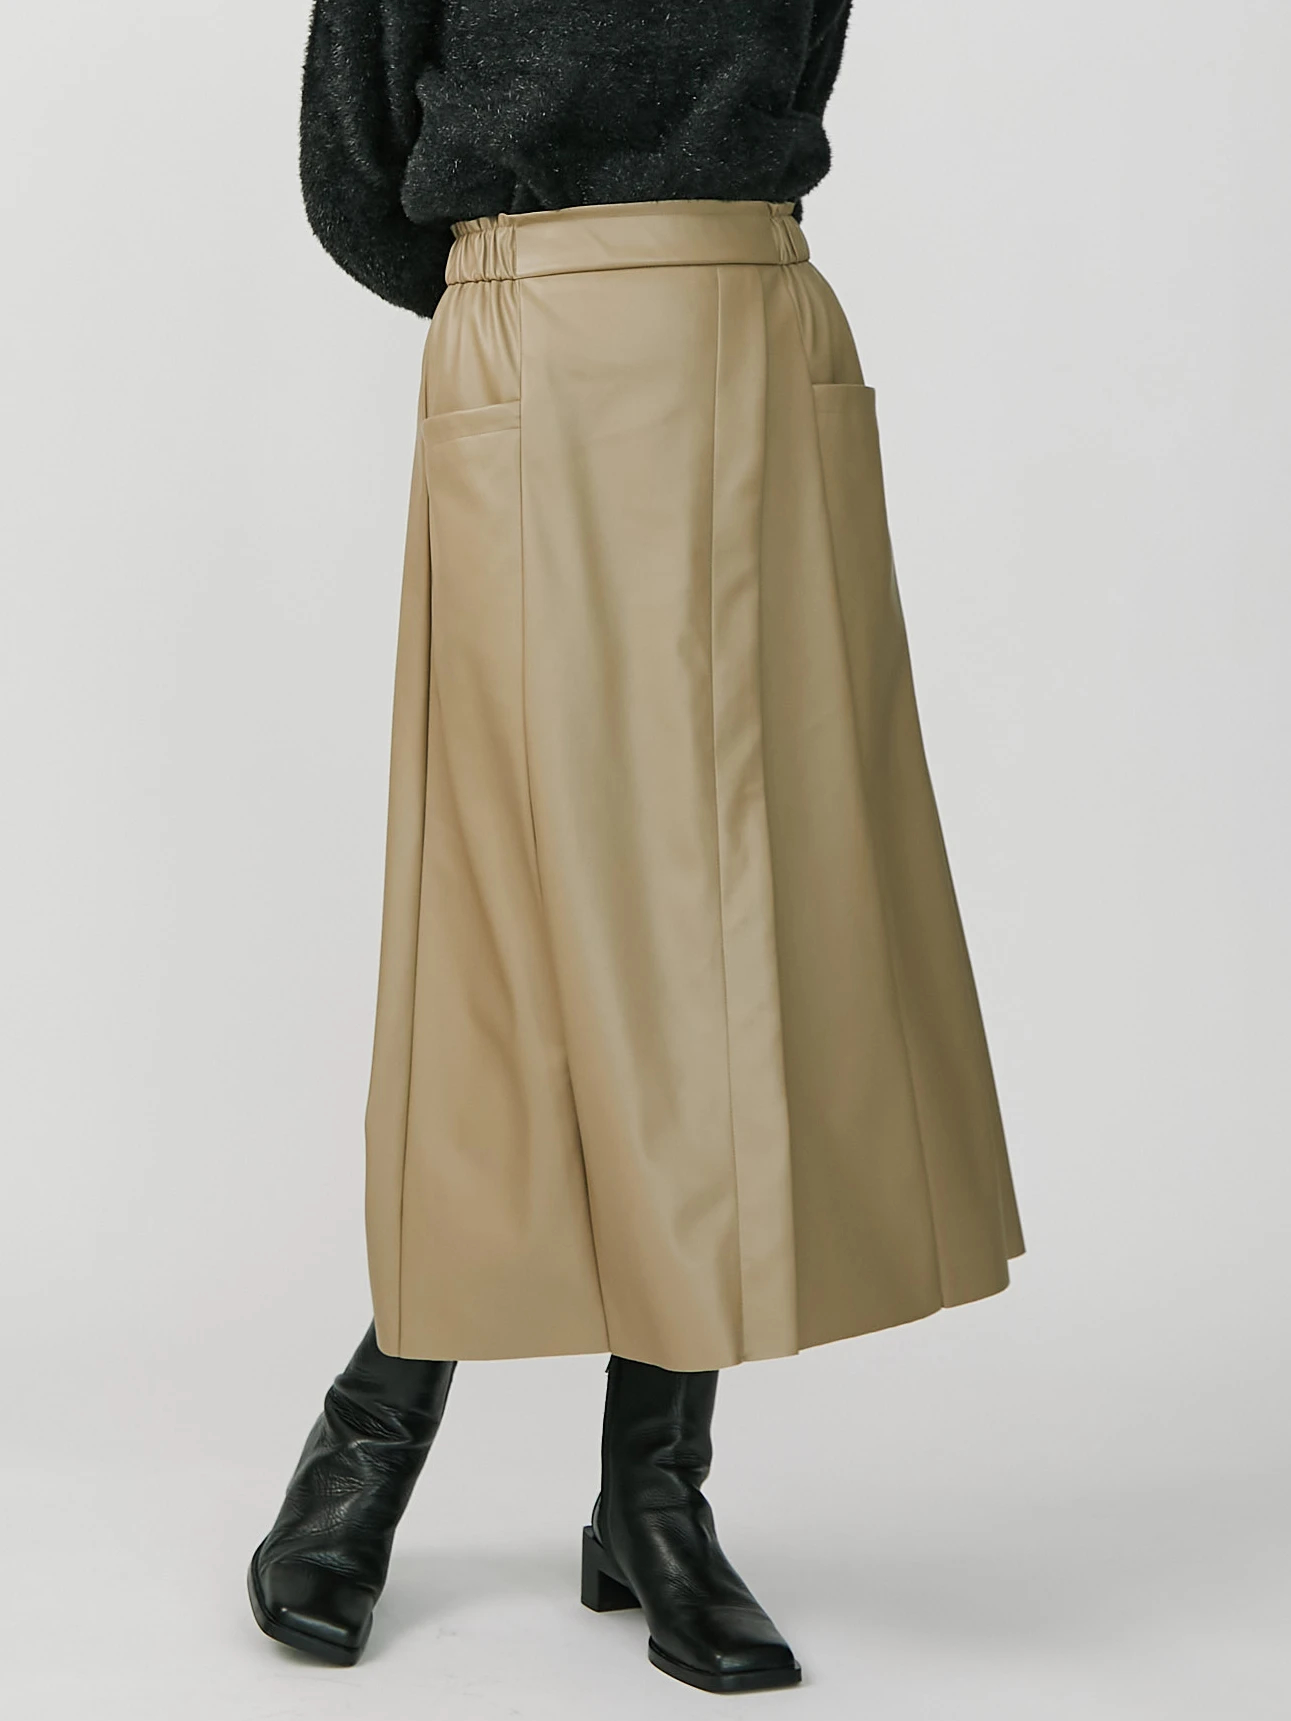 フェイクレザーアシメAラインスカート | レディースファッション通販の